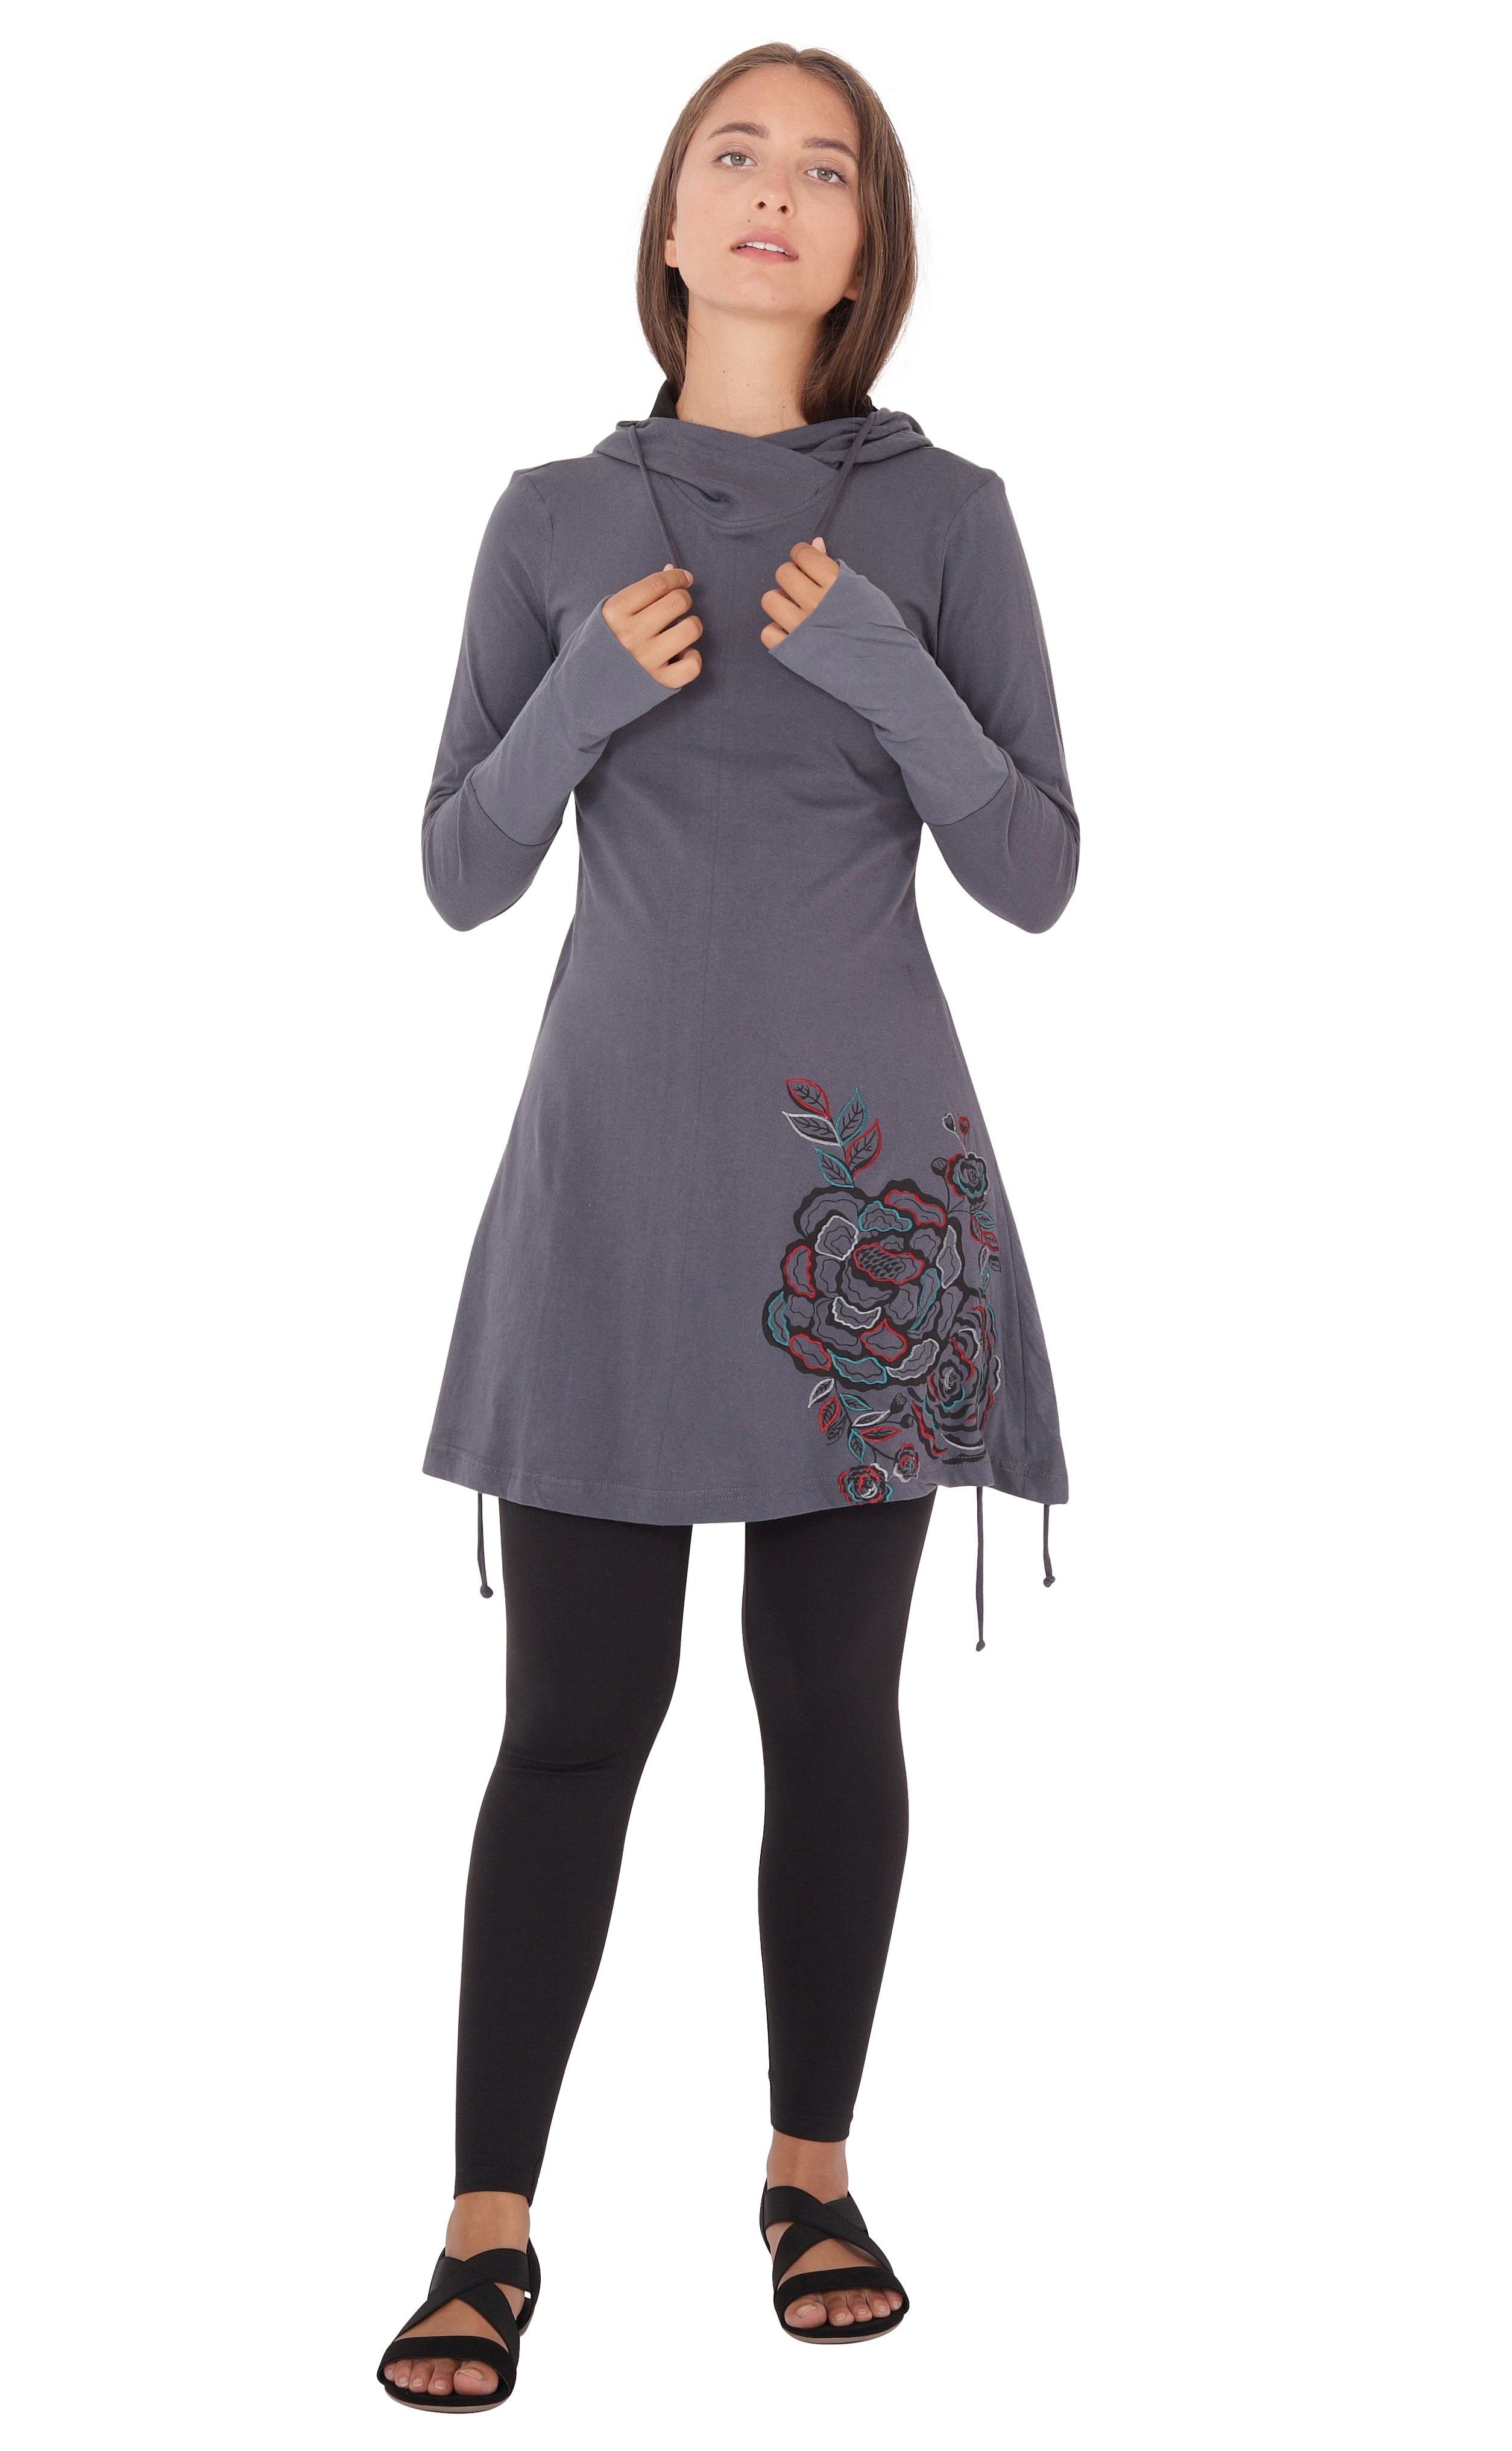 PUREWONDER A-Linien-Kleid Kapuzenkleid mit Blumen-Print Grau dr132 Jersey